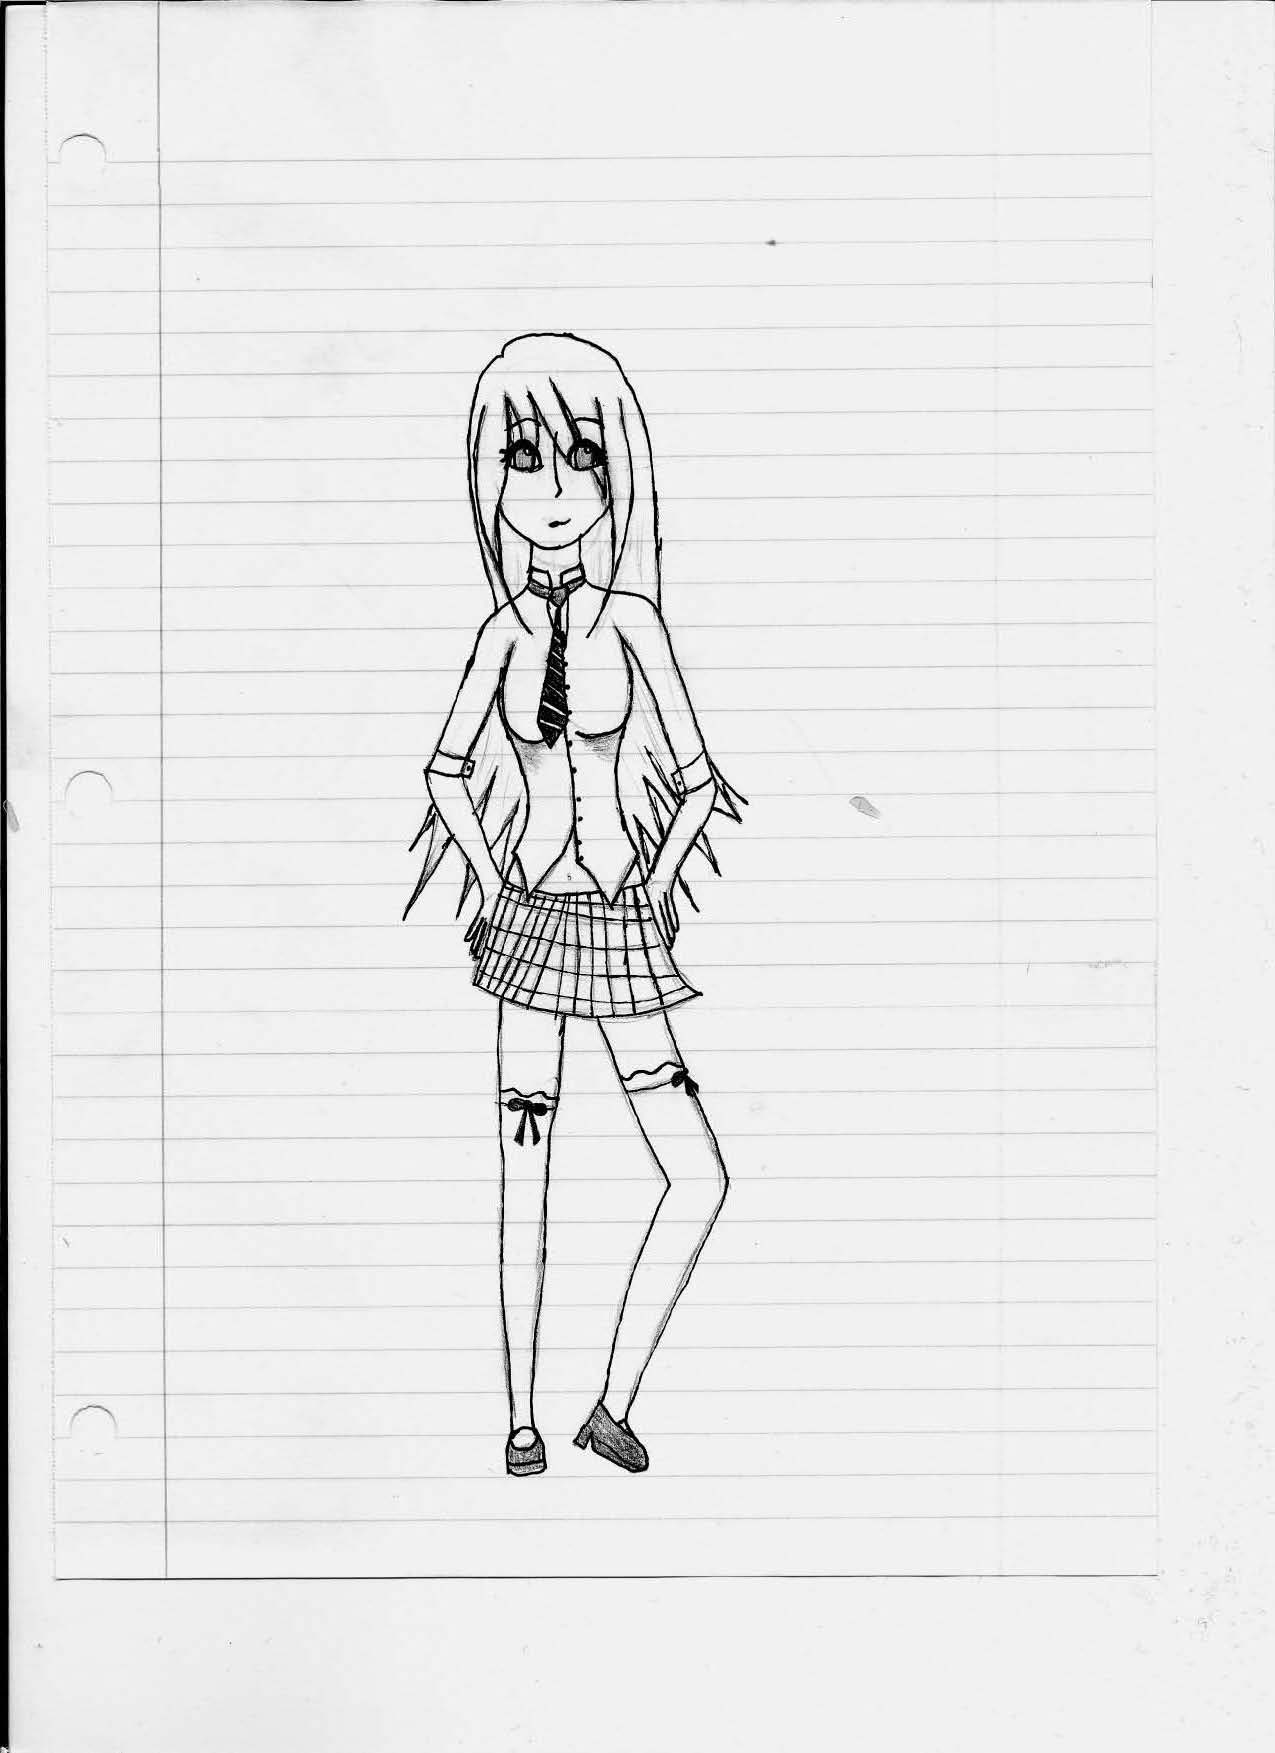 School girl by animeanimeanime